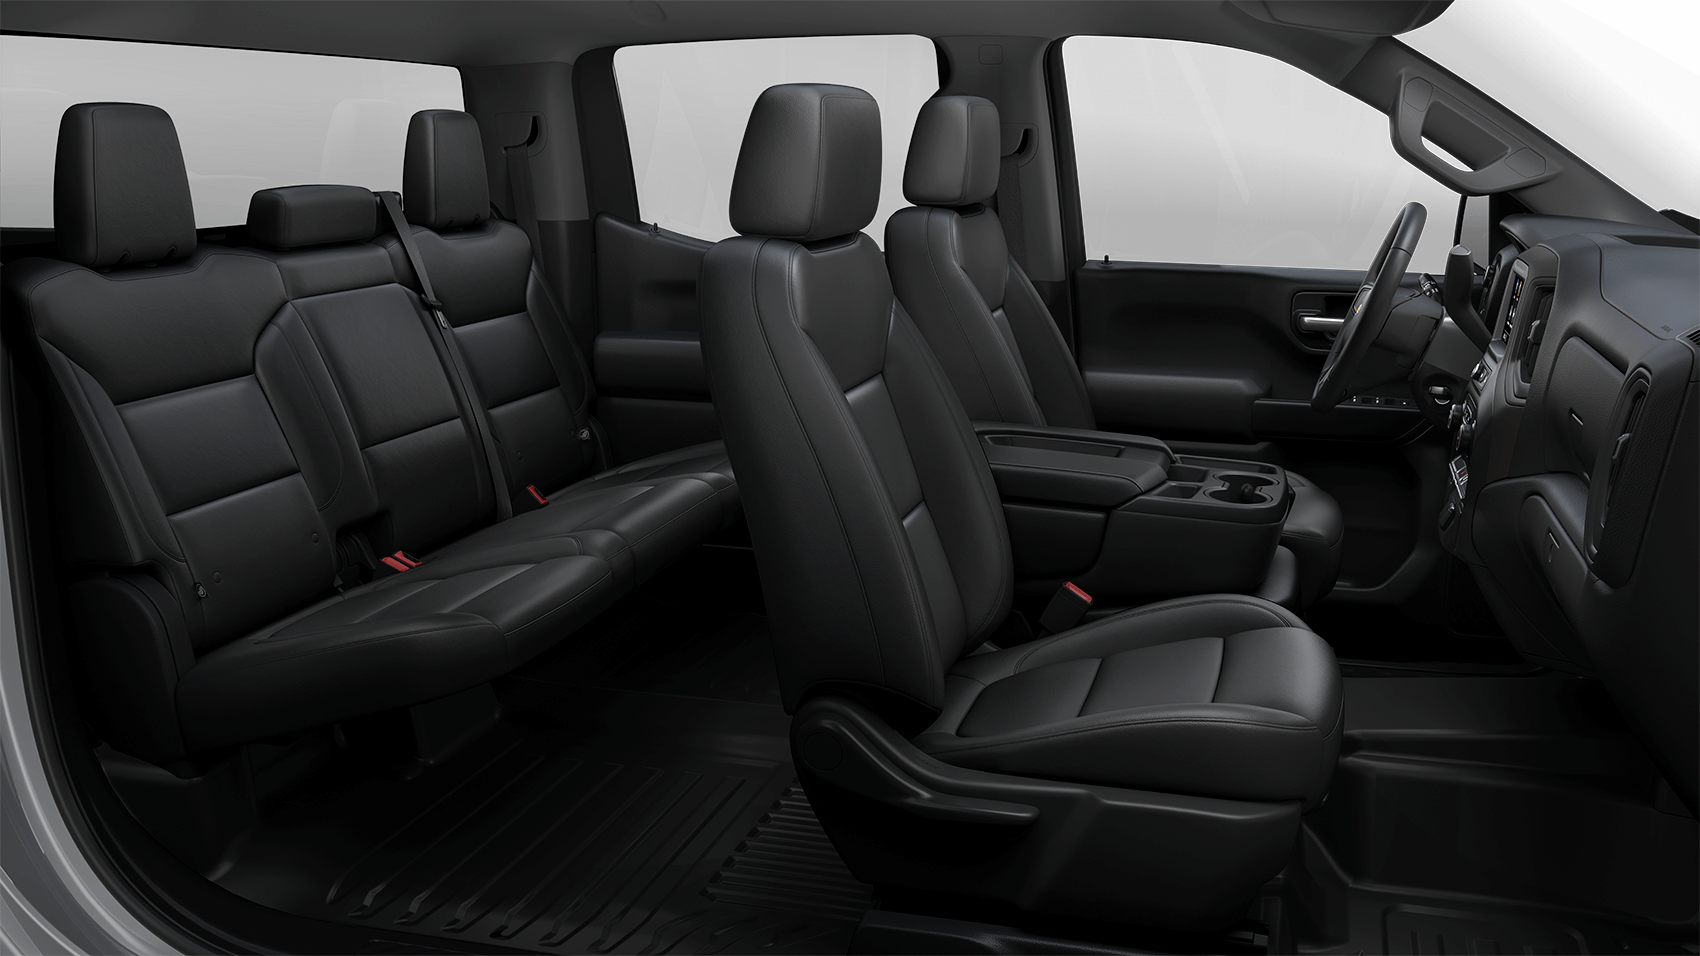 2021 Chevy Silverado 1500 Black Interior